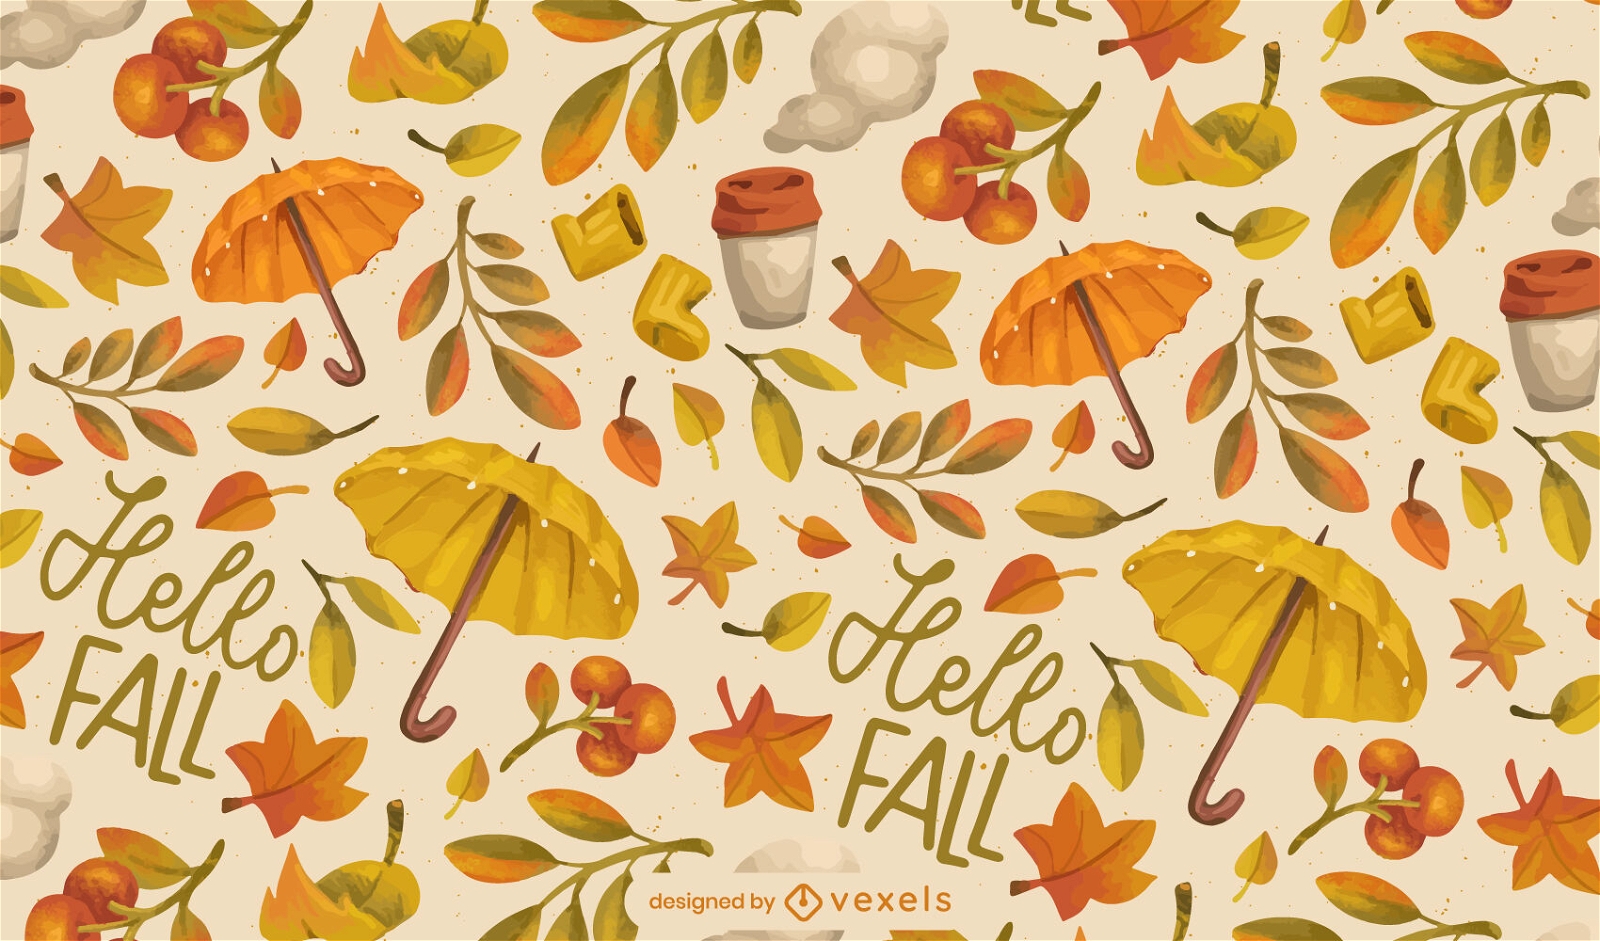 Hello fall autumn watercolor pattern design